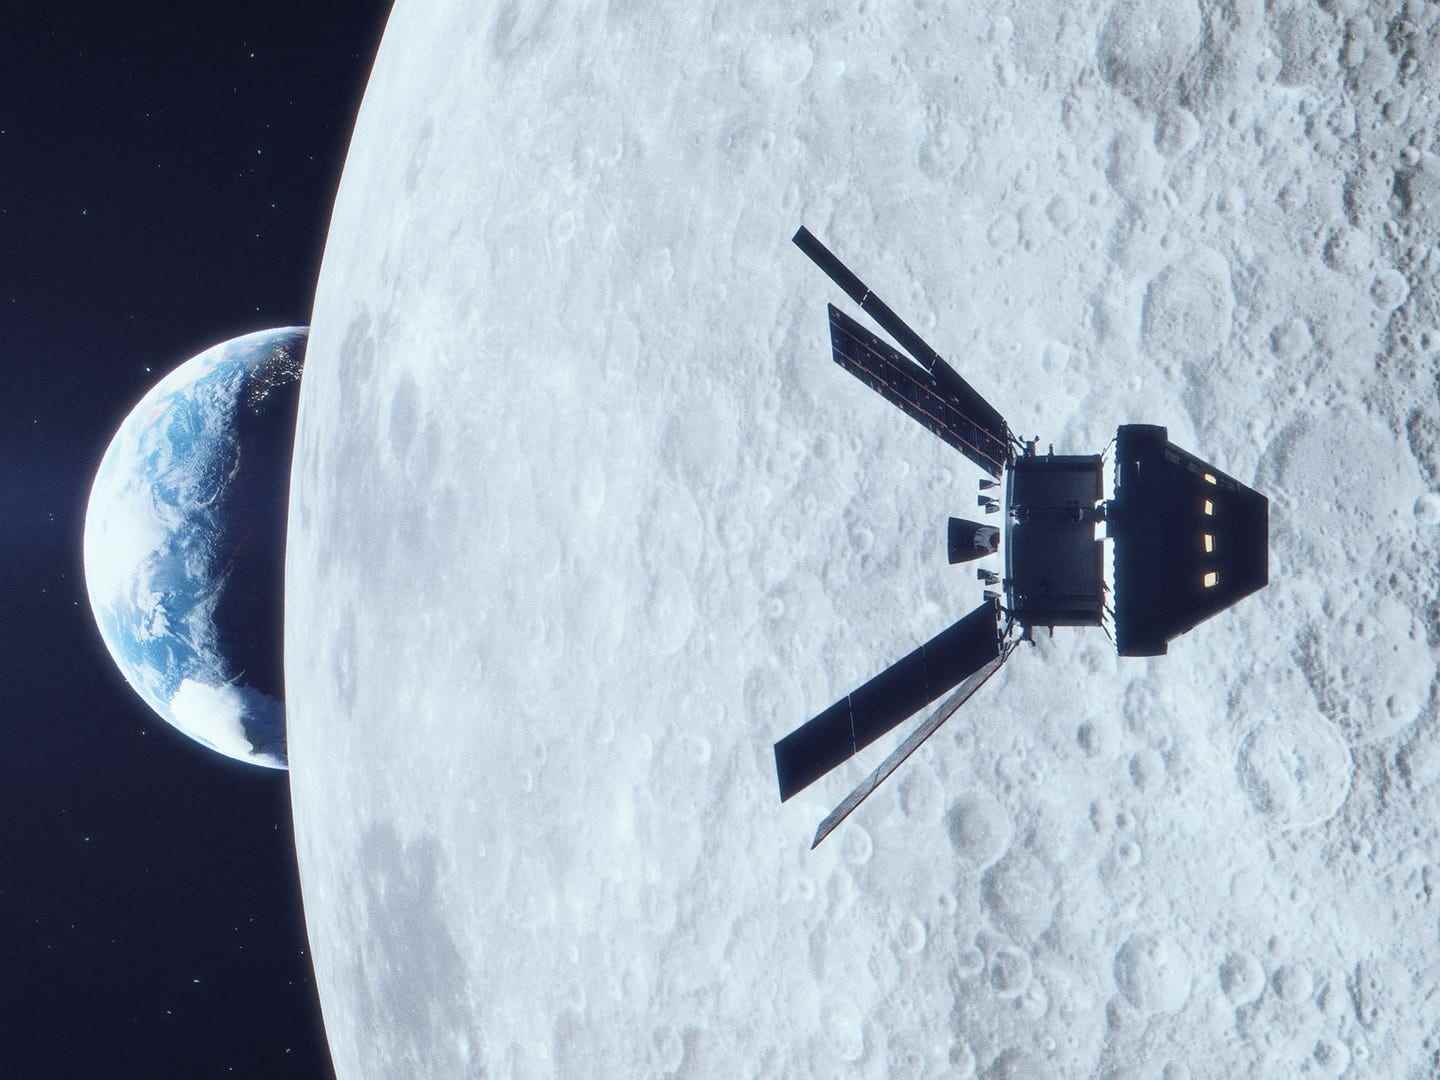 Abbildung zeigt ein Raumschiff mit Solarpaneelflügeln, das an der anderen Seite des Mondes vorbeifliegt, mit der Erde in der Ferne